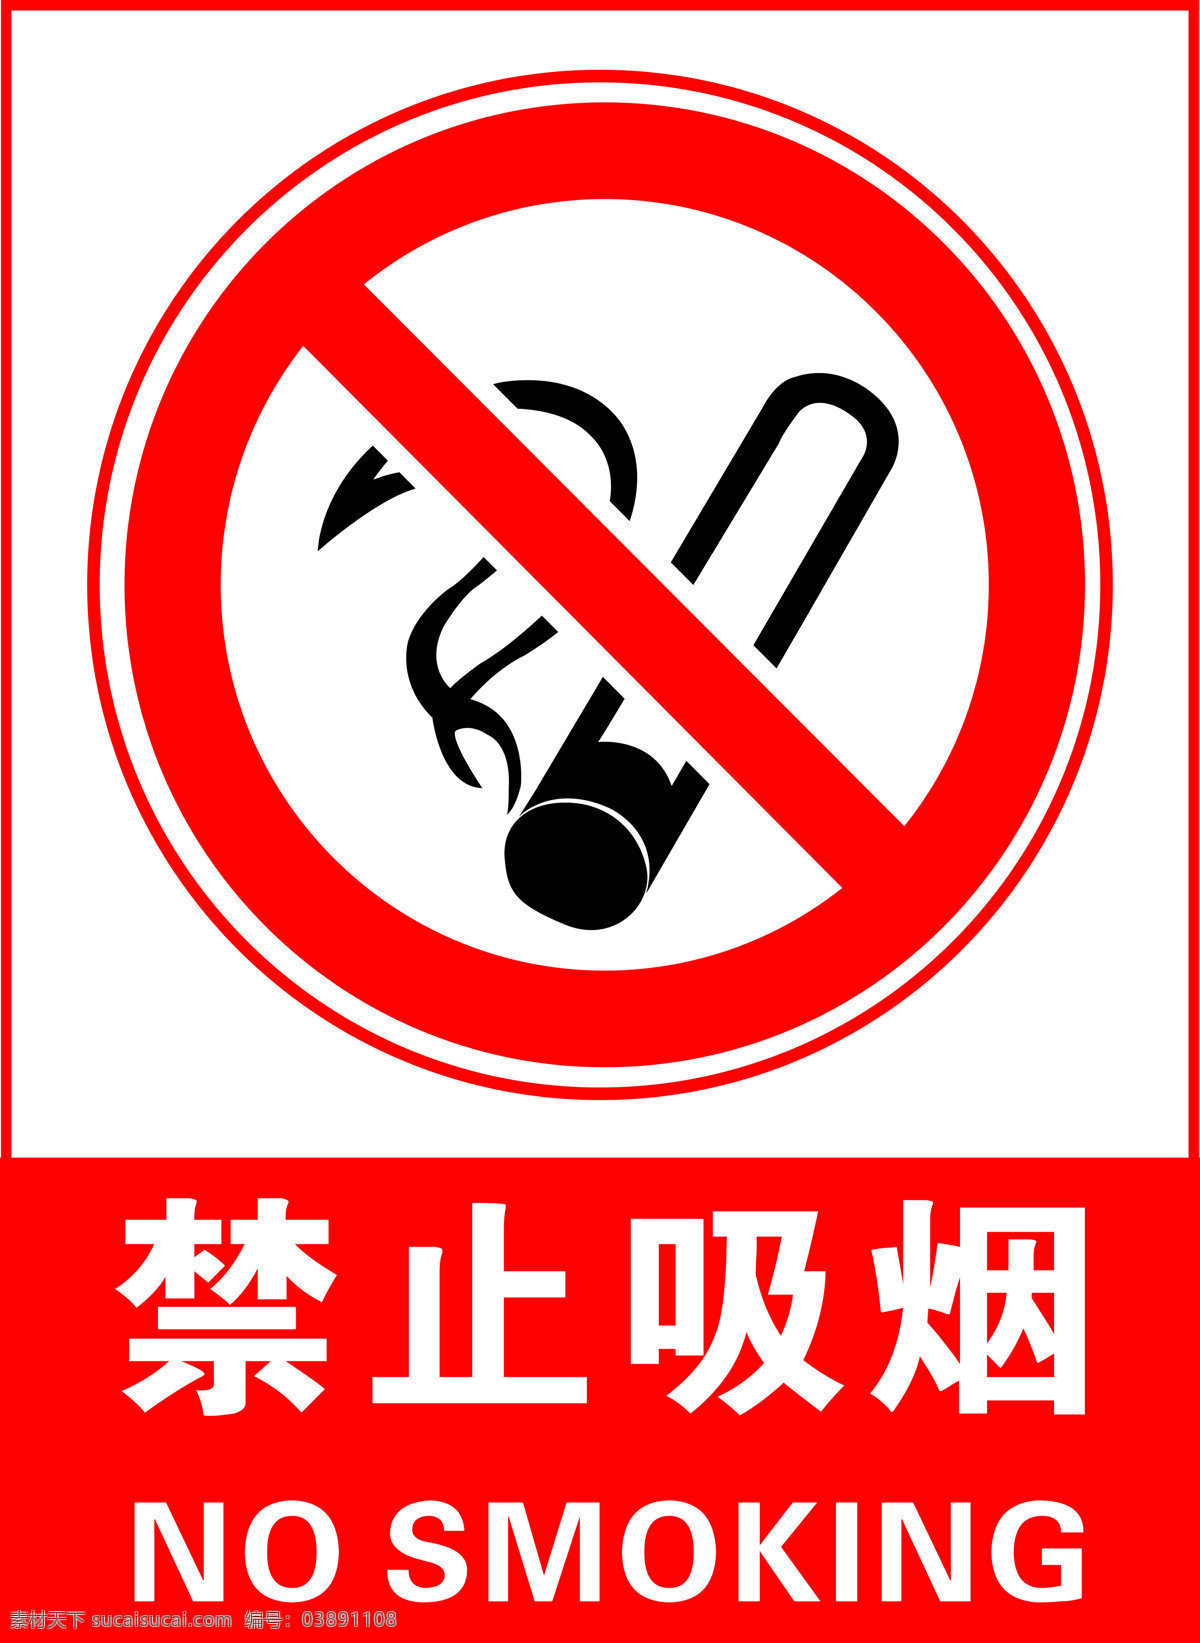 禁止吸烟标志 禁止 吸烟 logo 禁止吸烟标识 禁止吸烟图片 禁止吸烟高清 禁止吸烟超清 公共标识 标志图标 公共标识标志